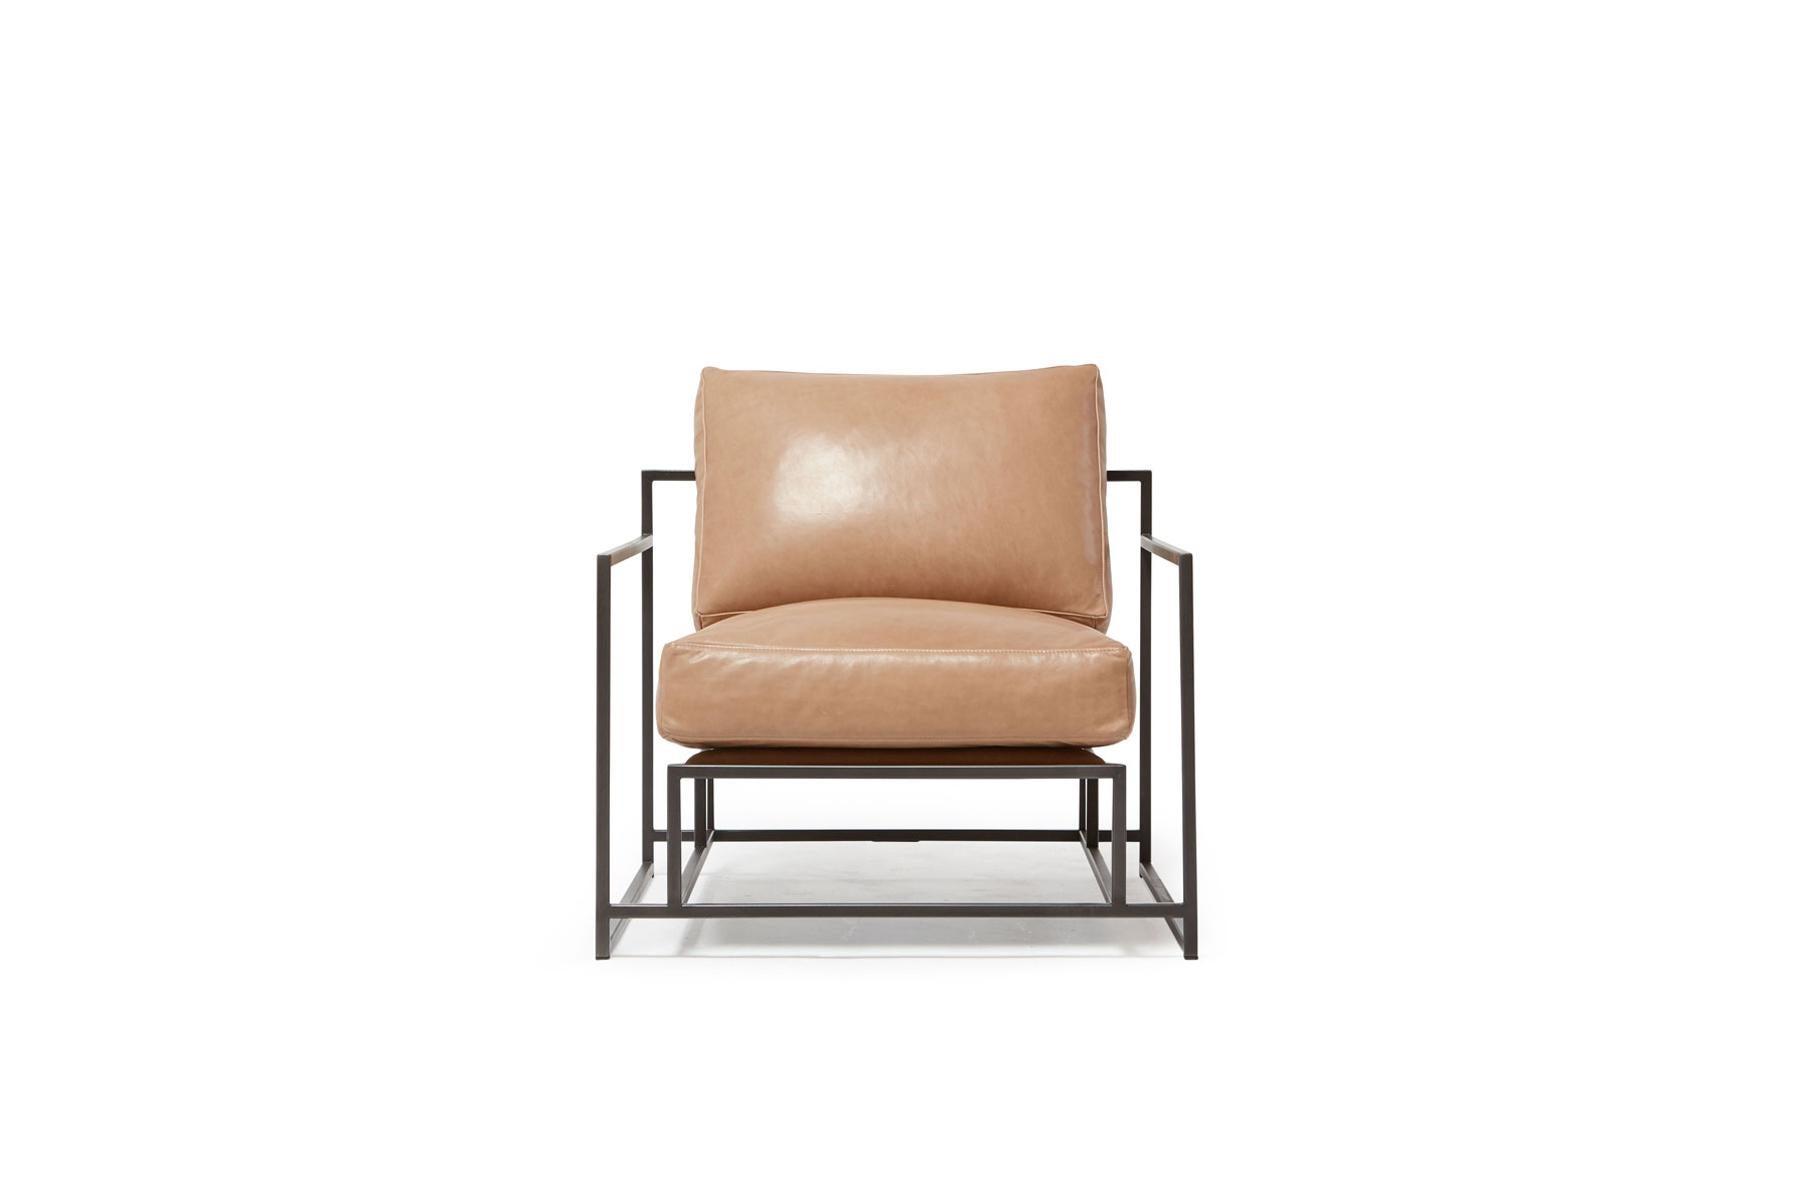 Der Inheritance Armchair ist ebenso raffiniert wie bequem.
 
Diese Variante ist mit einem glatten, hellen karamellfarbenen Leder gepolstert. Die Schaumstoff-Sitzkissen sind mit Daunen umhüllt und sorgen für ein weiches und bequemes Lounge-Erlebnis.